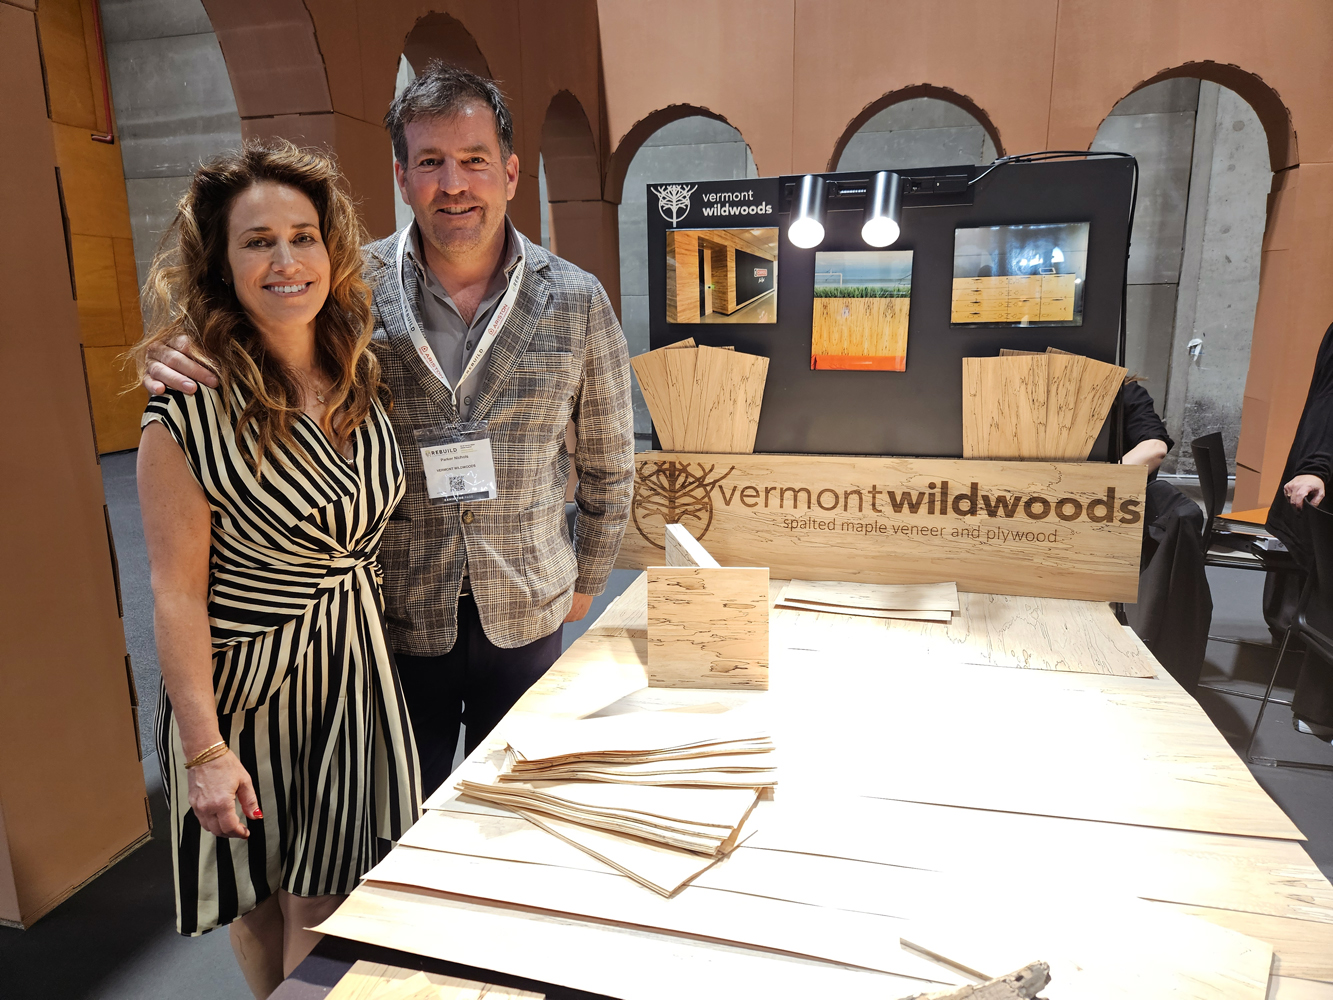 La empresa estadounidense VERMONT WILDWOODS busca mercado en España